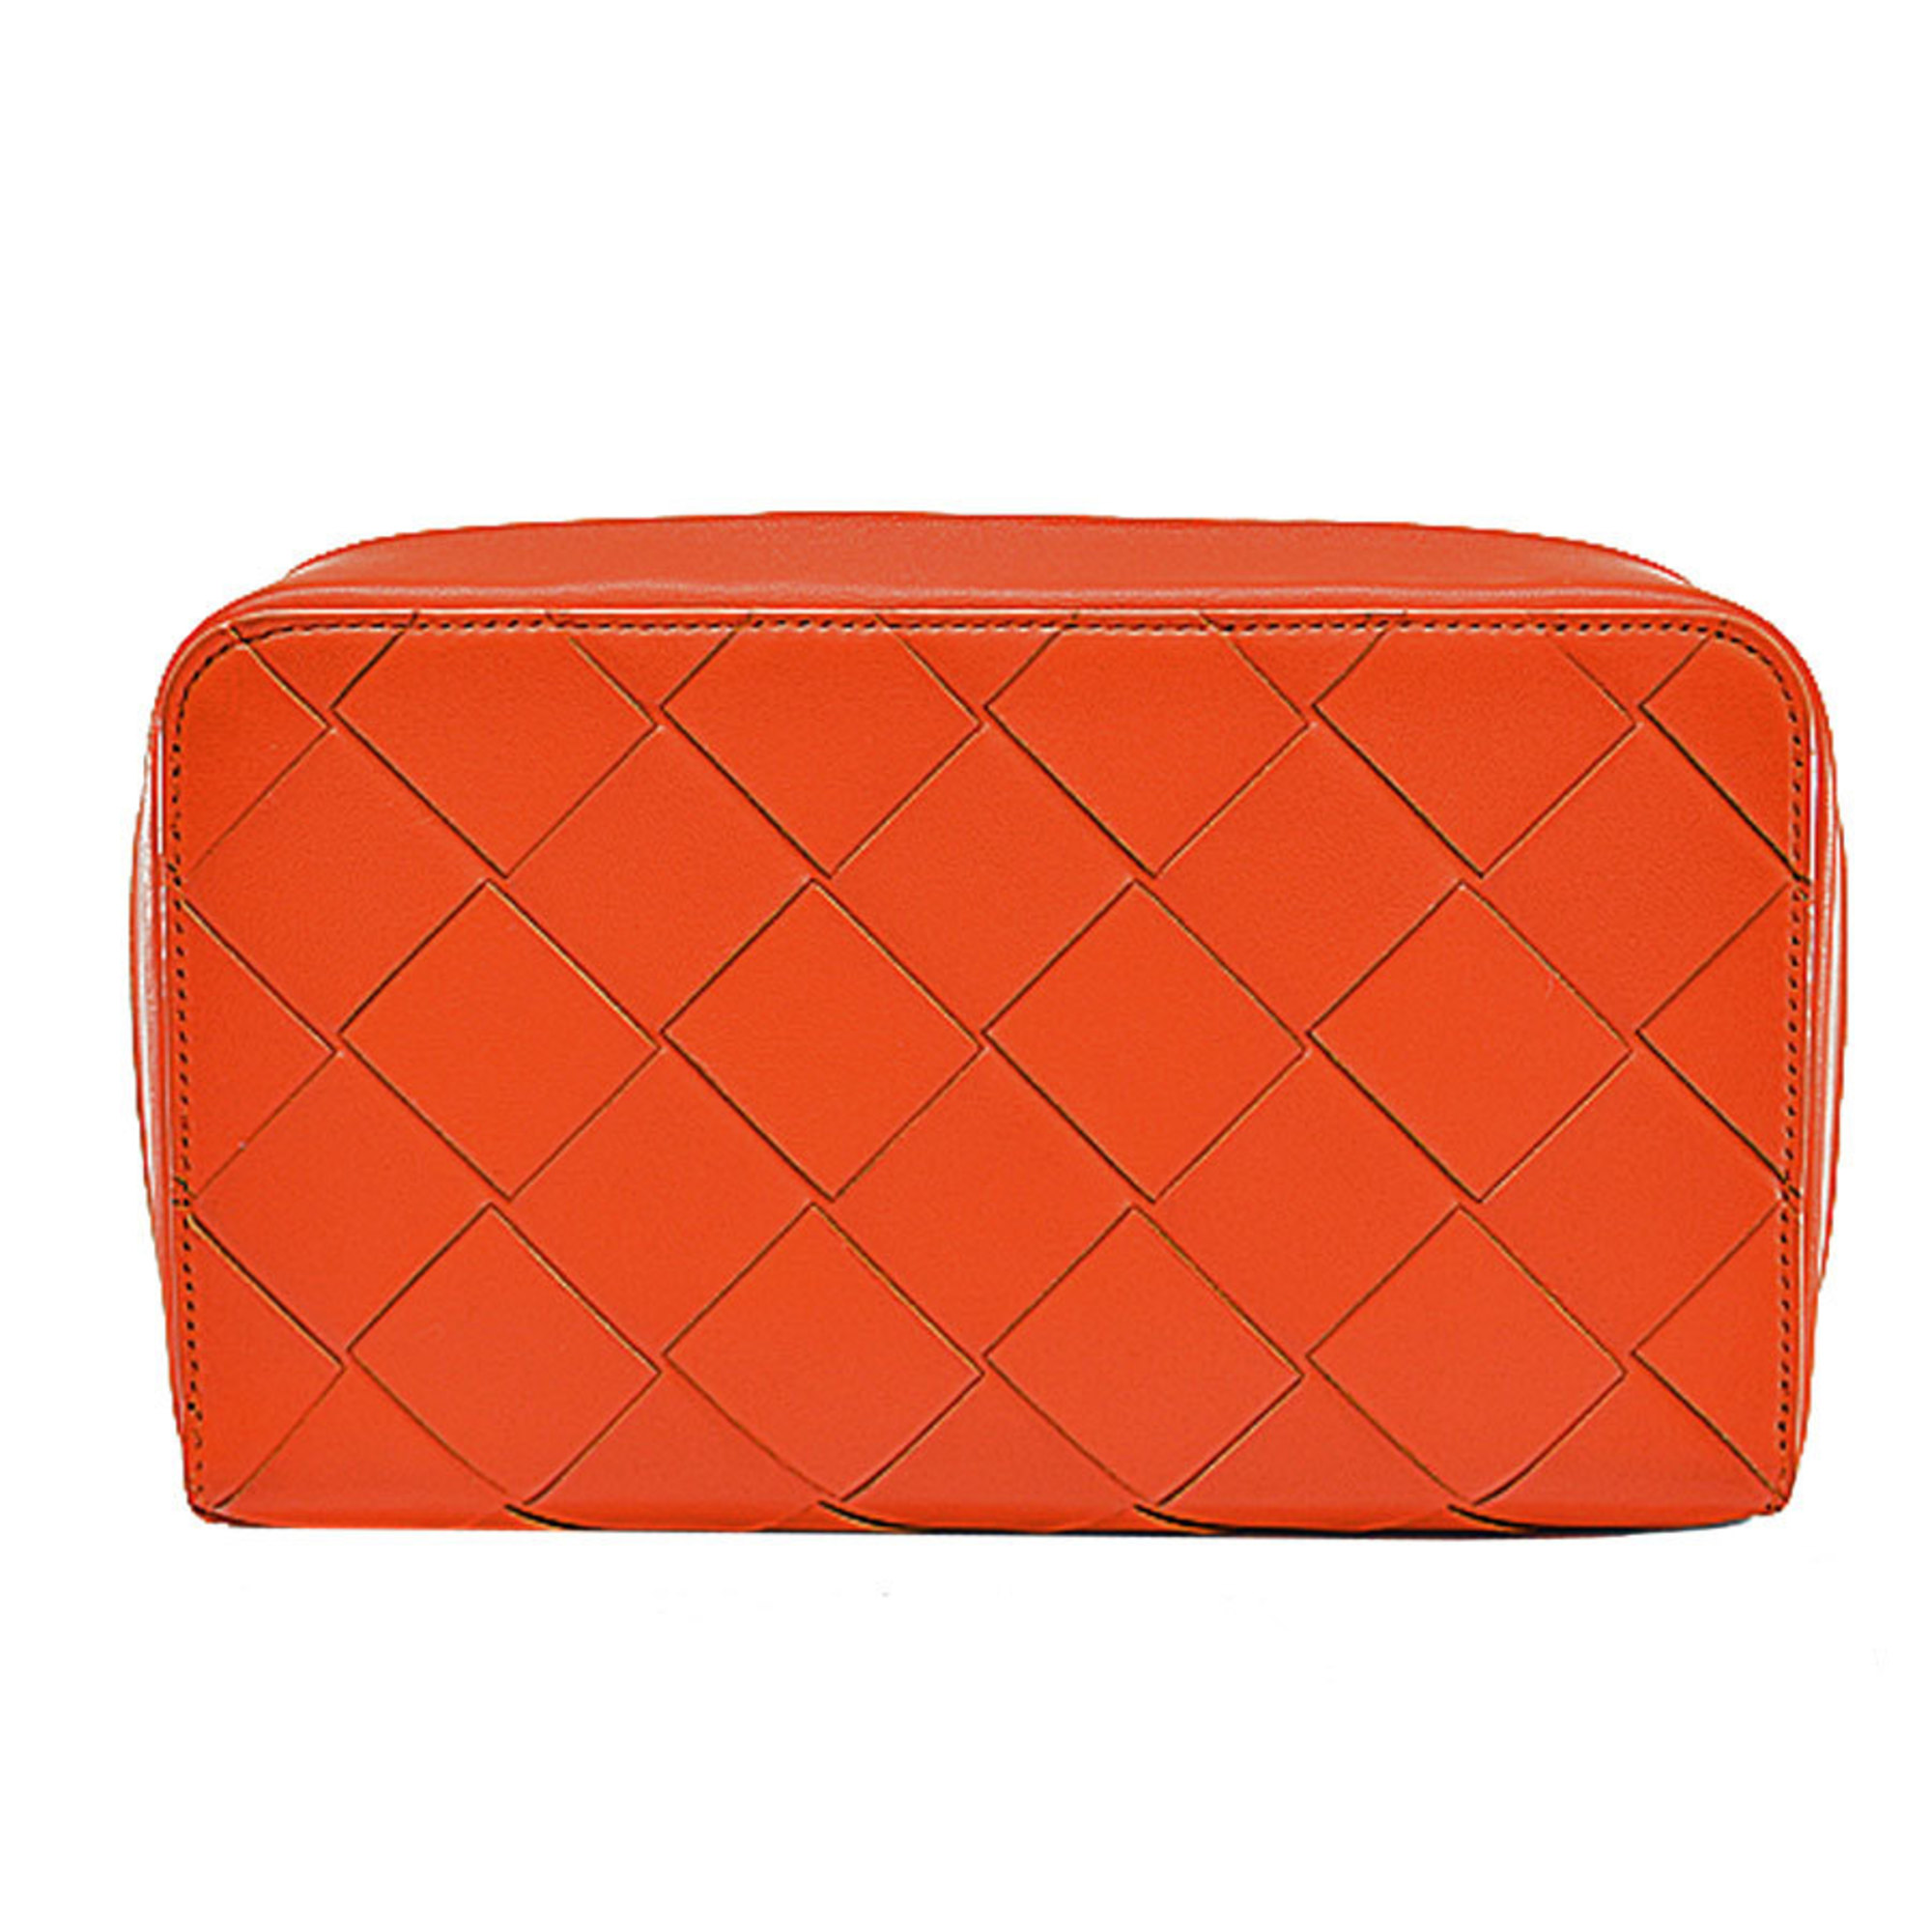 Bottega Veneta BOTTEGA VENETA Bag Maxi Intrecciato Orange Leather Second Clutch Ladies